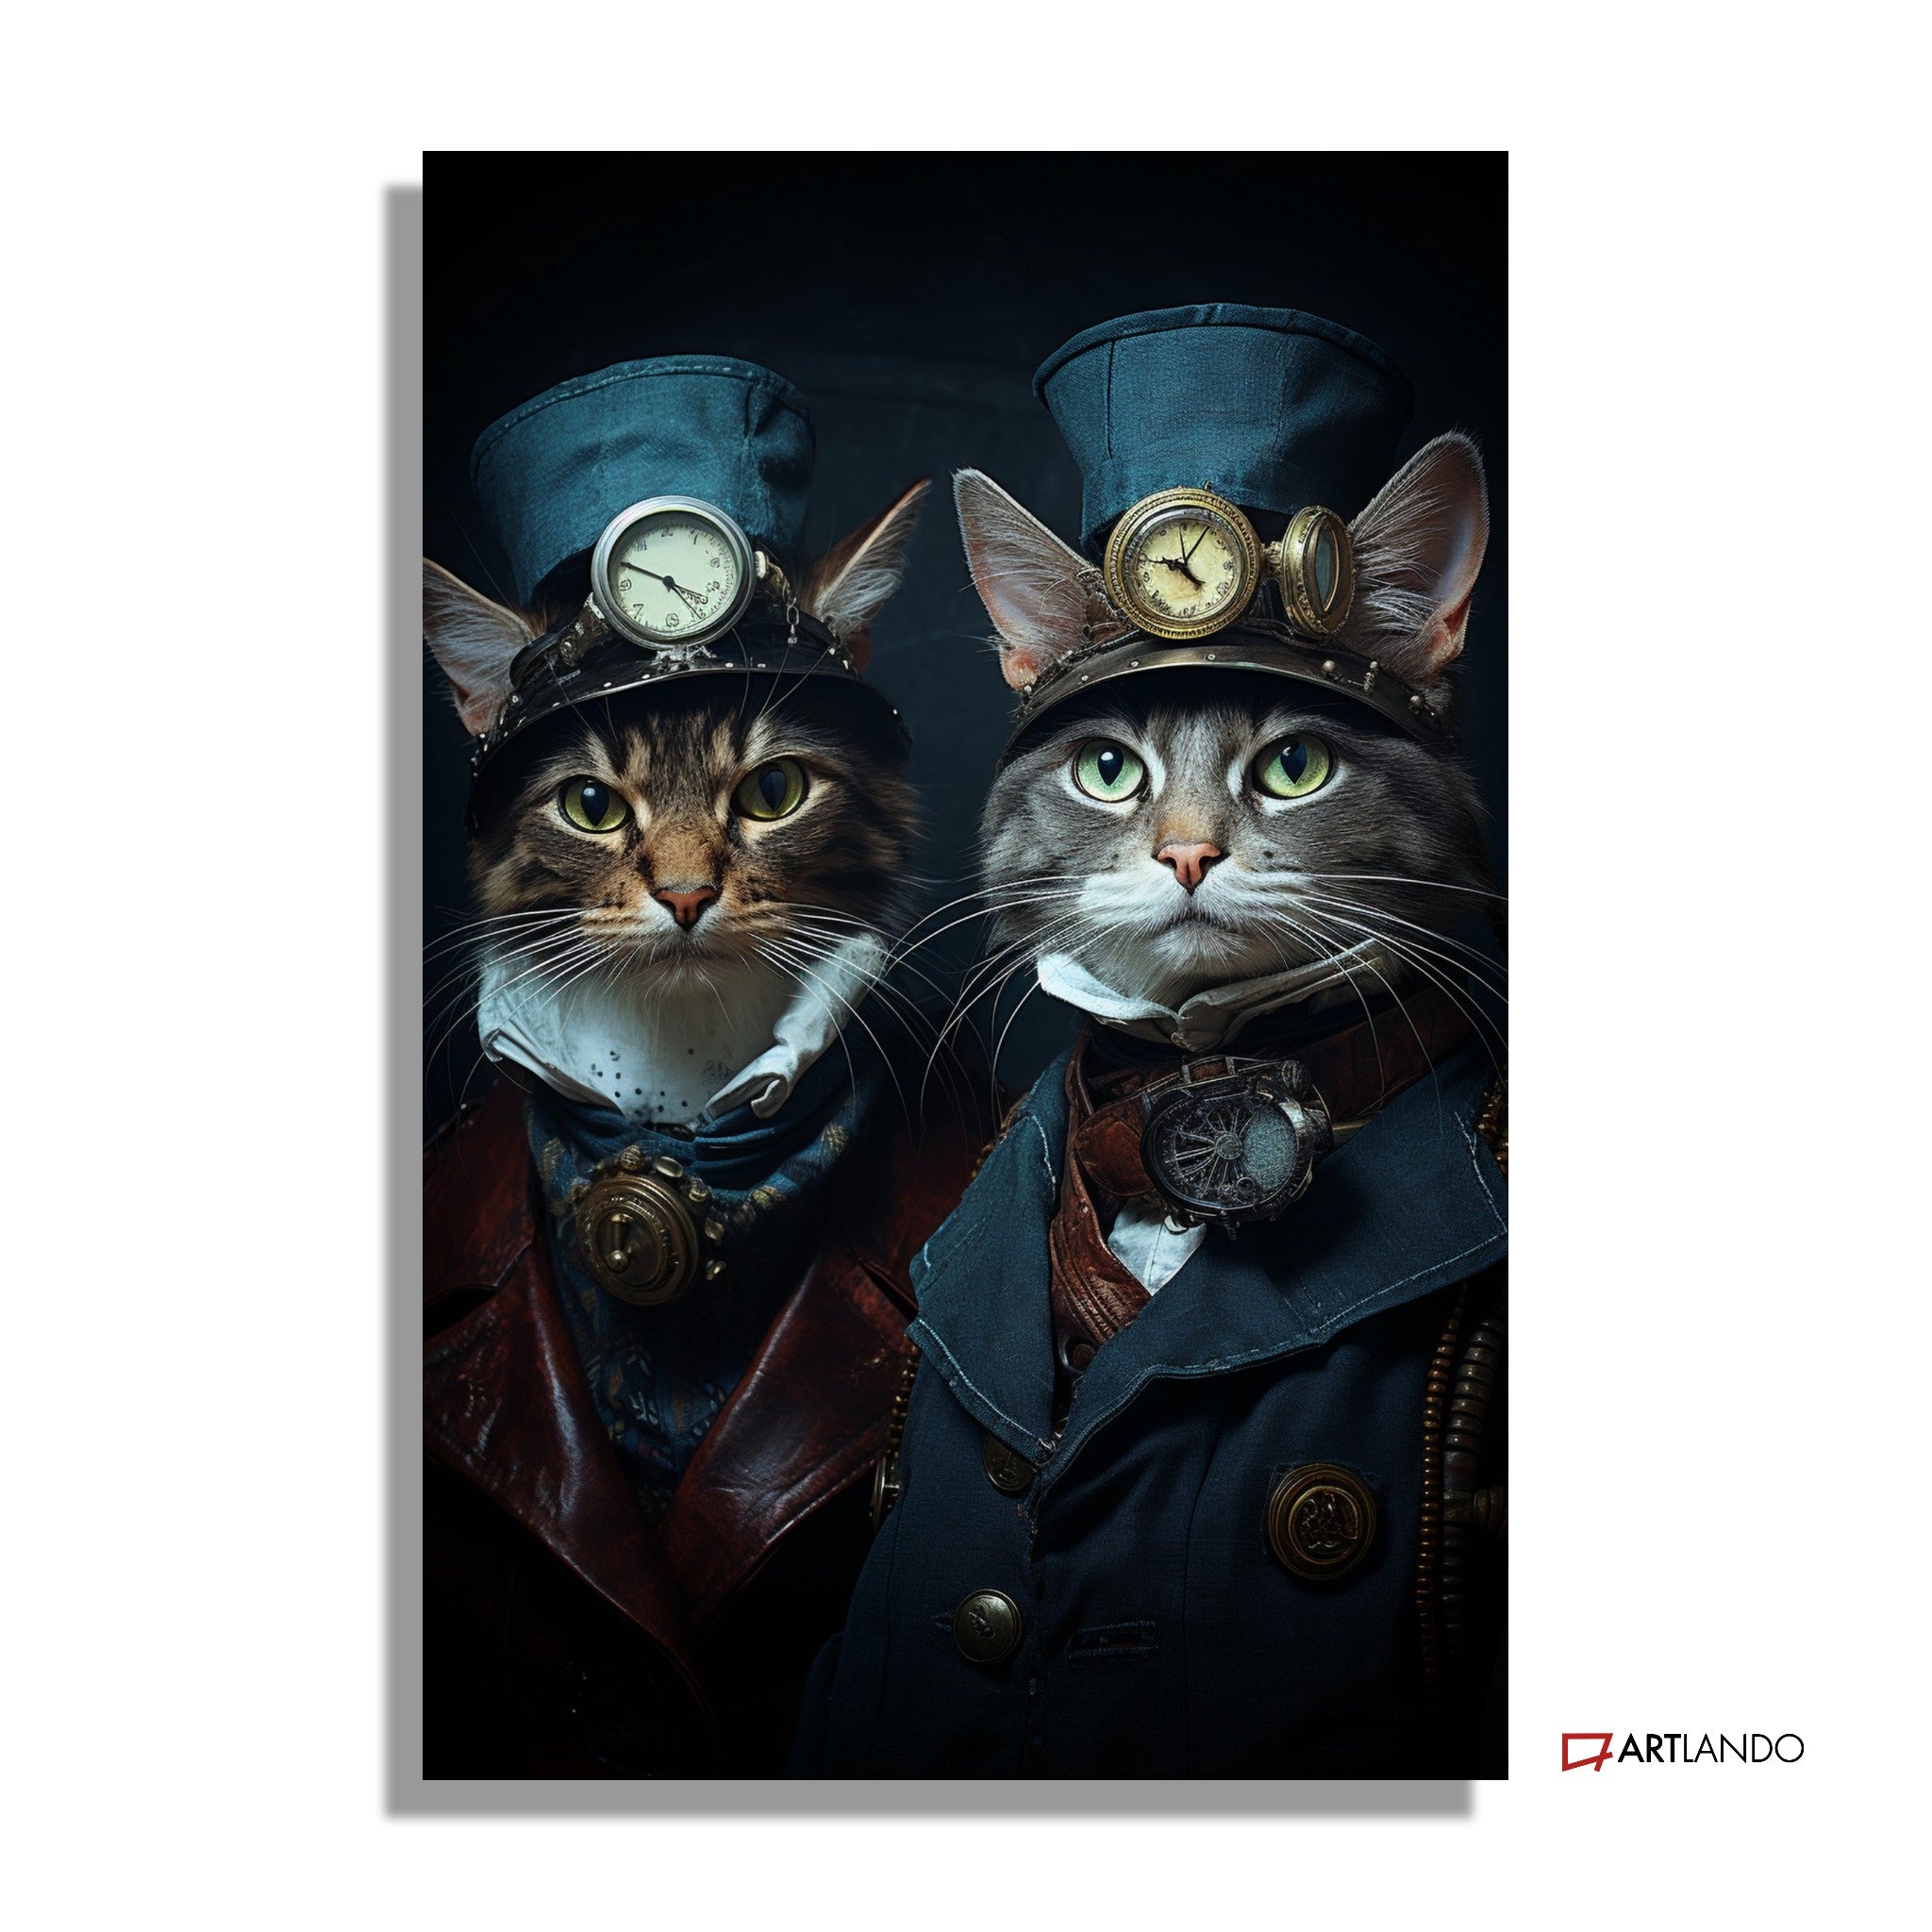 Zwei Katzen in historischem Kostüm mit Zylinder und Uhr